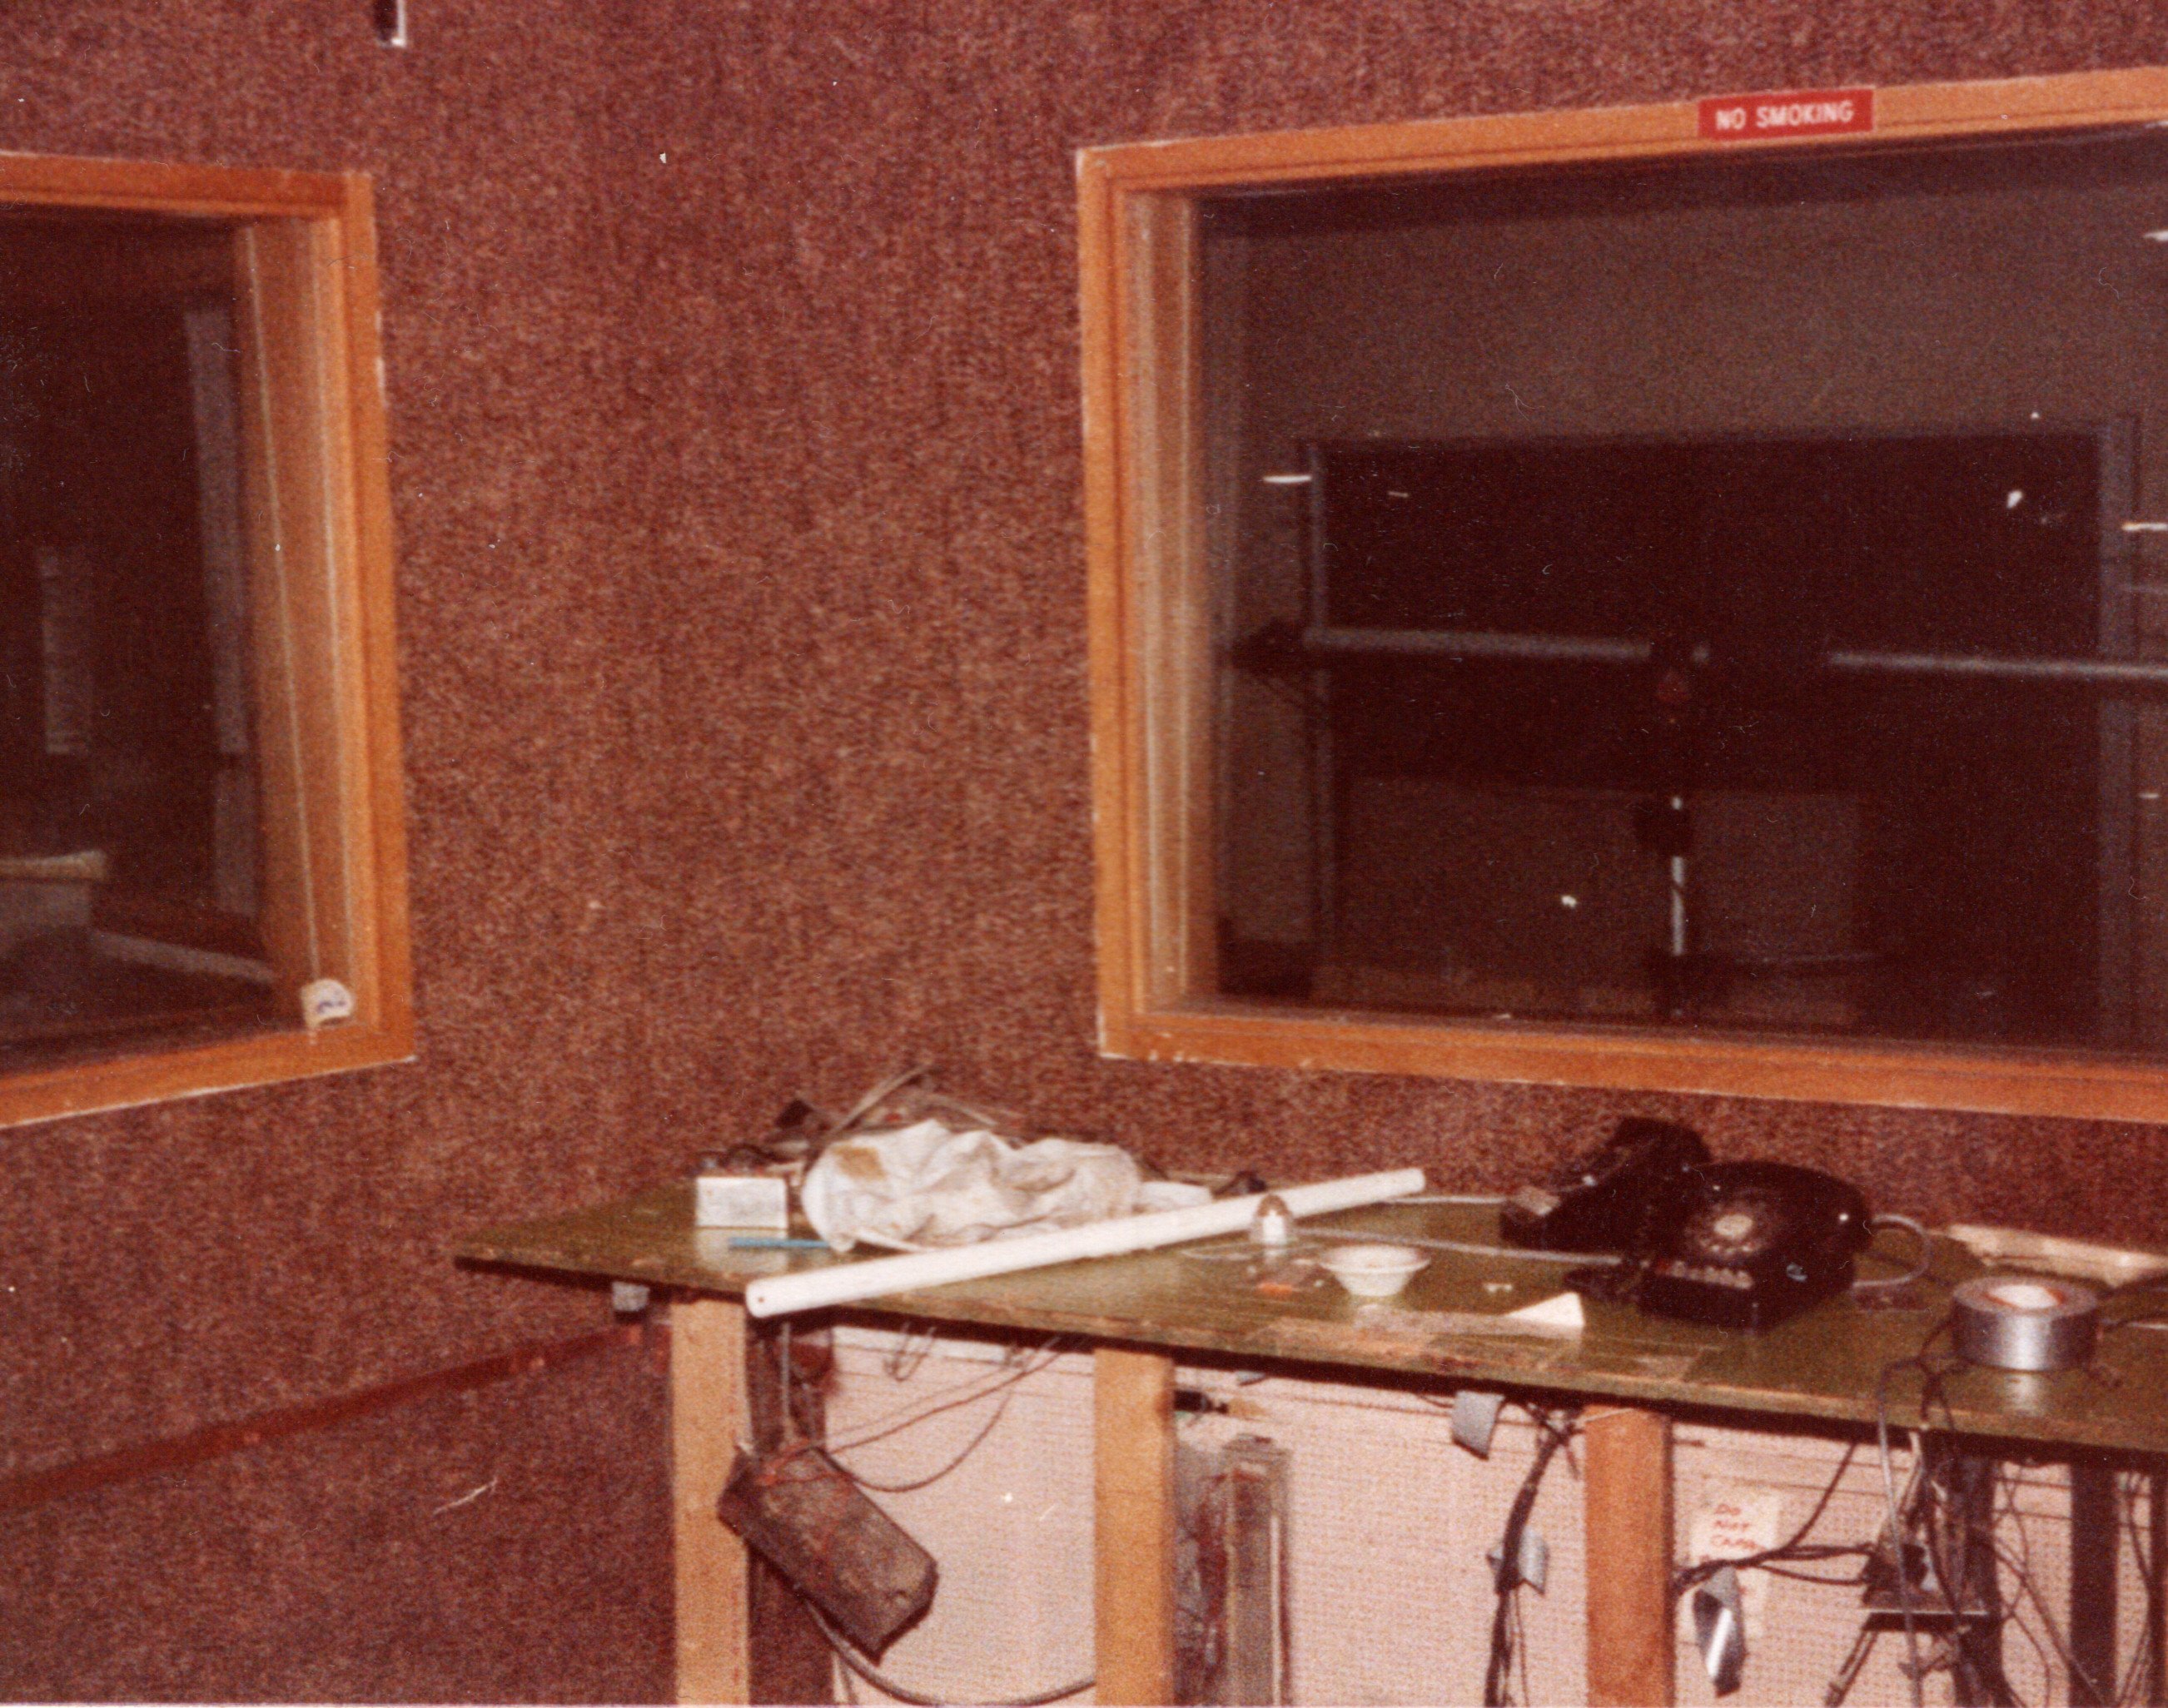 1983 - The rebuild of FM